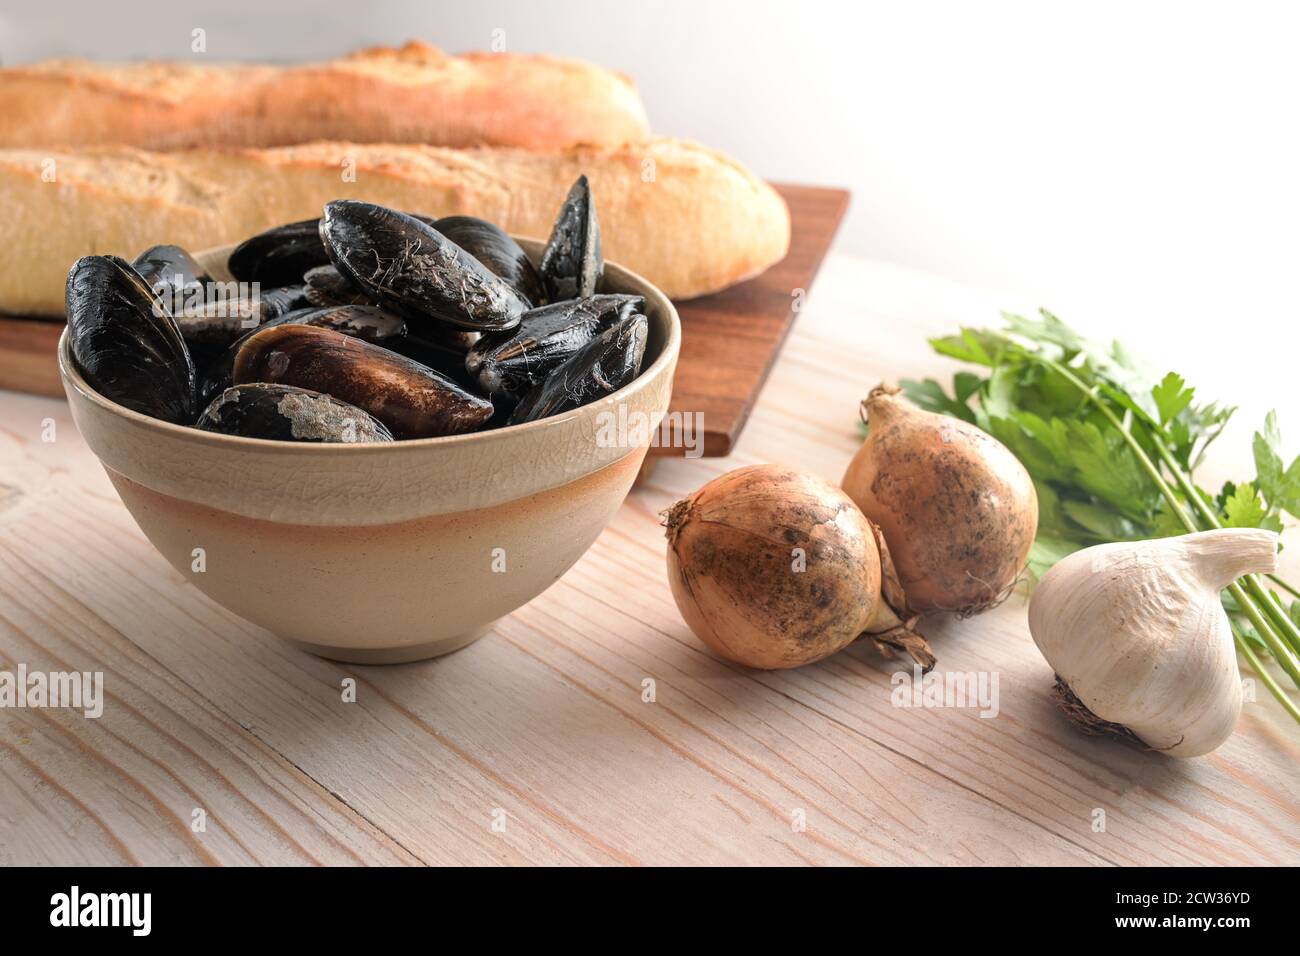 Moules et ingrédients frais crus comme l'oignon, l'ail, le persil et le pain de baguette pour un plat méditerranéen d'apéritif sur une table en bois clair, Copy spa Banque D'Images